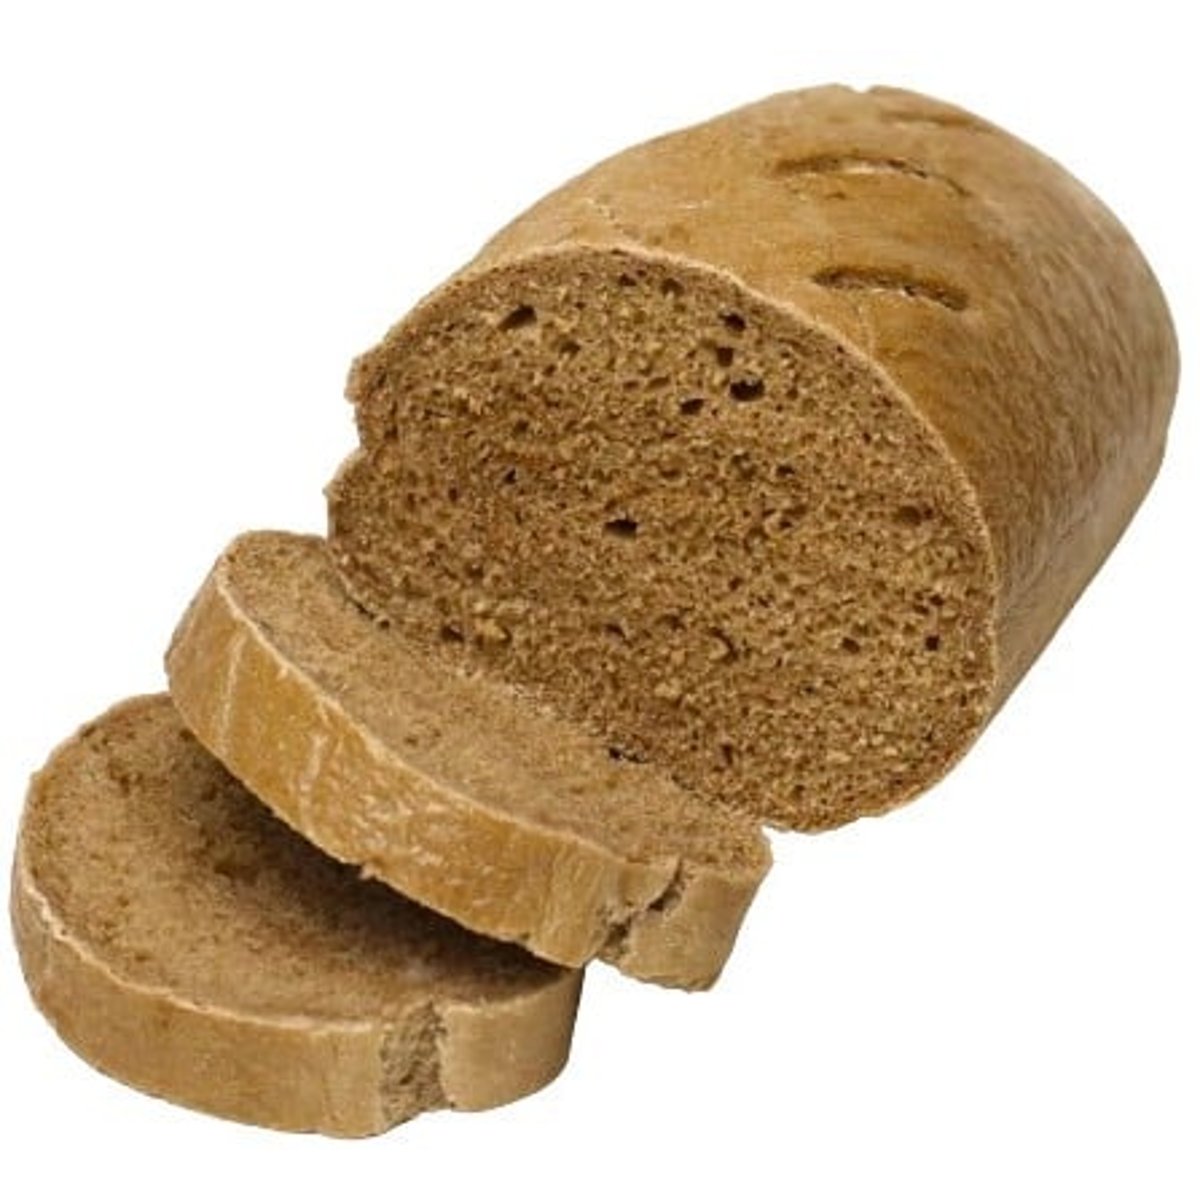 Pekárna Harmonia Nízkobílkovinový tmavý chléb bez lepku